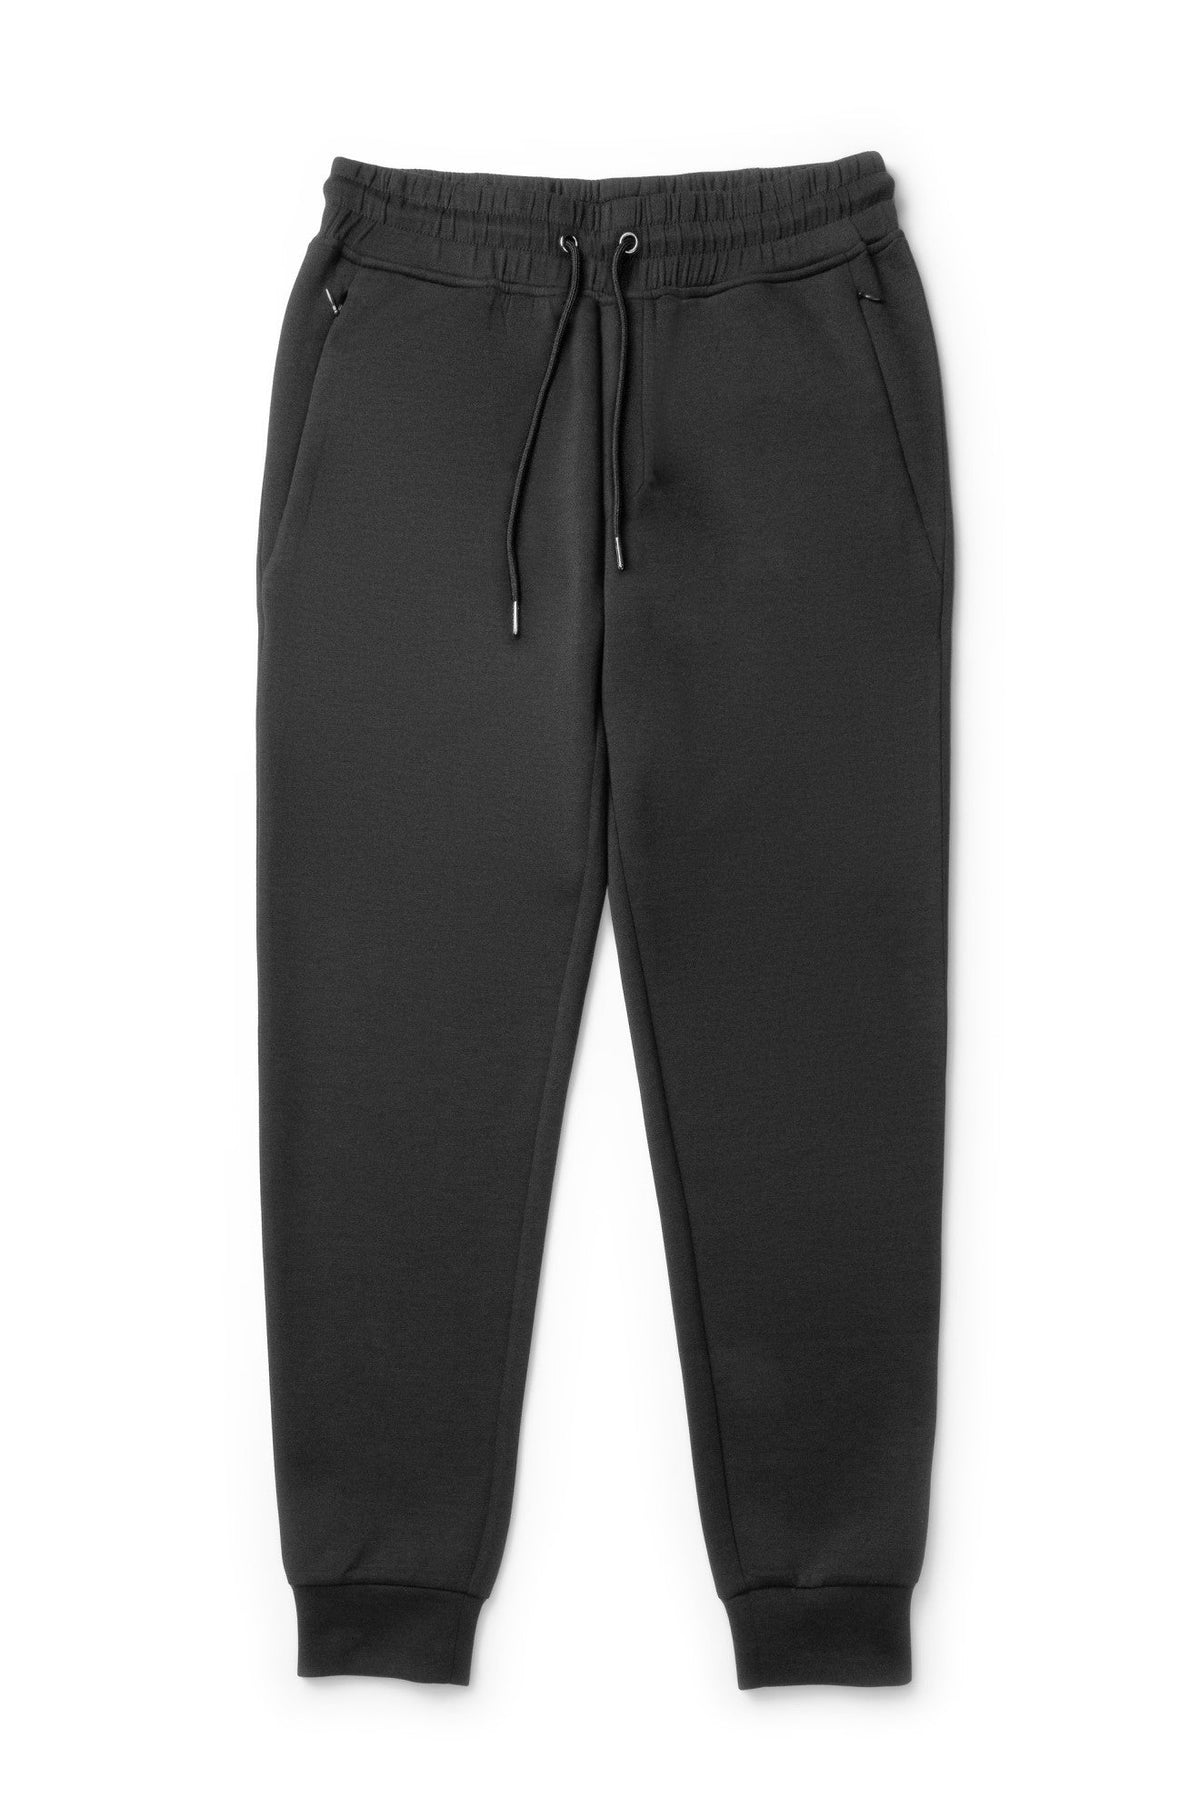 Pantalon de jogging pour homme par Robert Barakett | Brixton RB31082 BLK | Machemise.ca, vêtements mode pour hommes